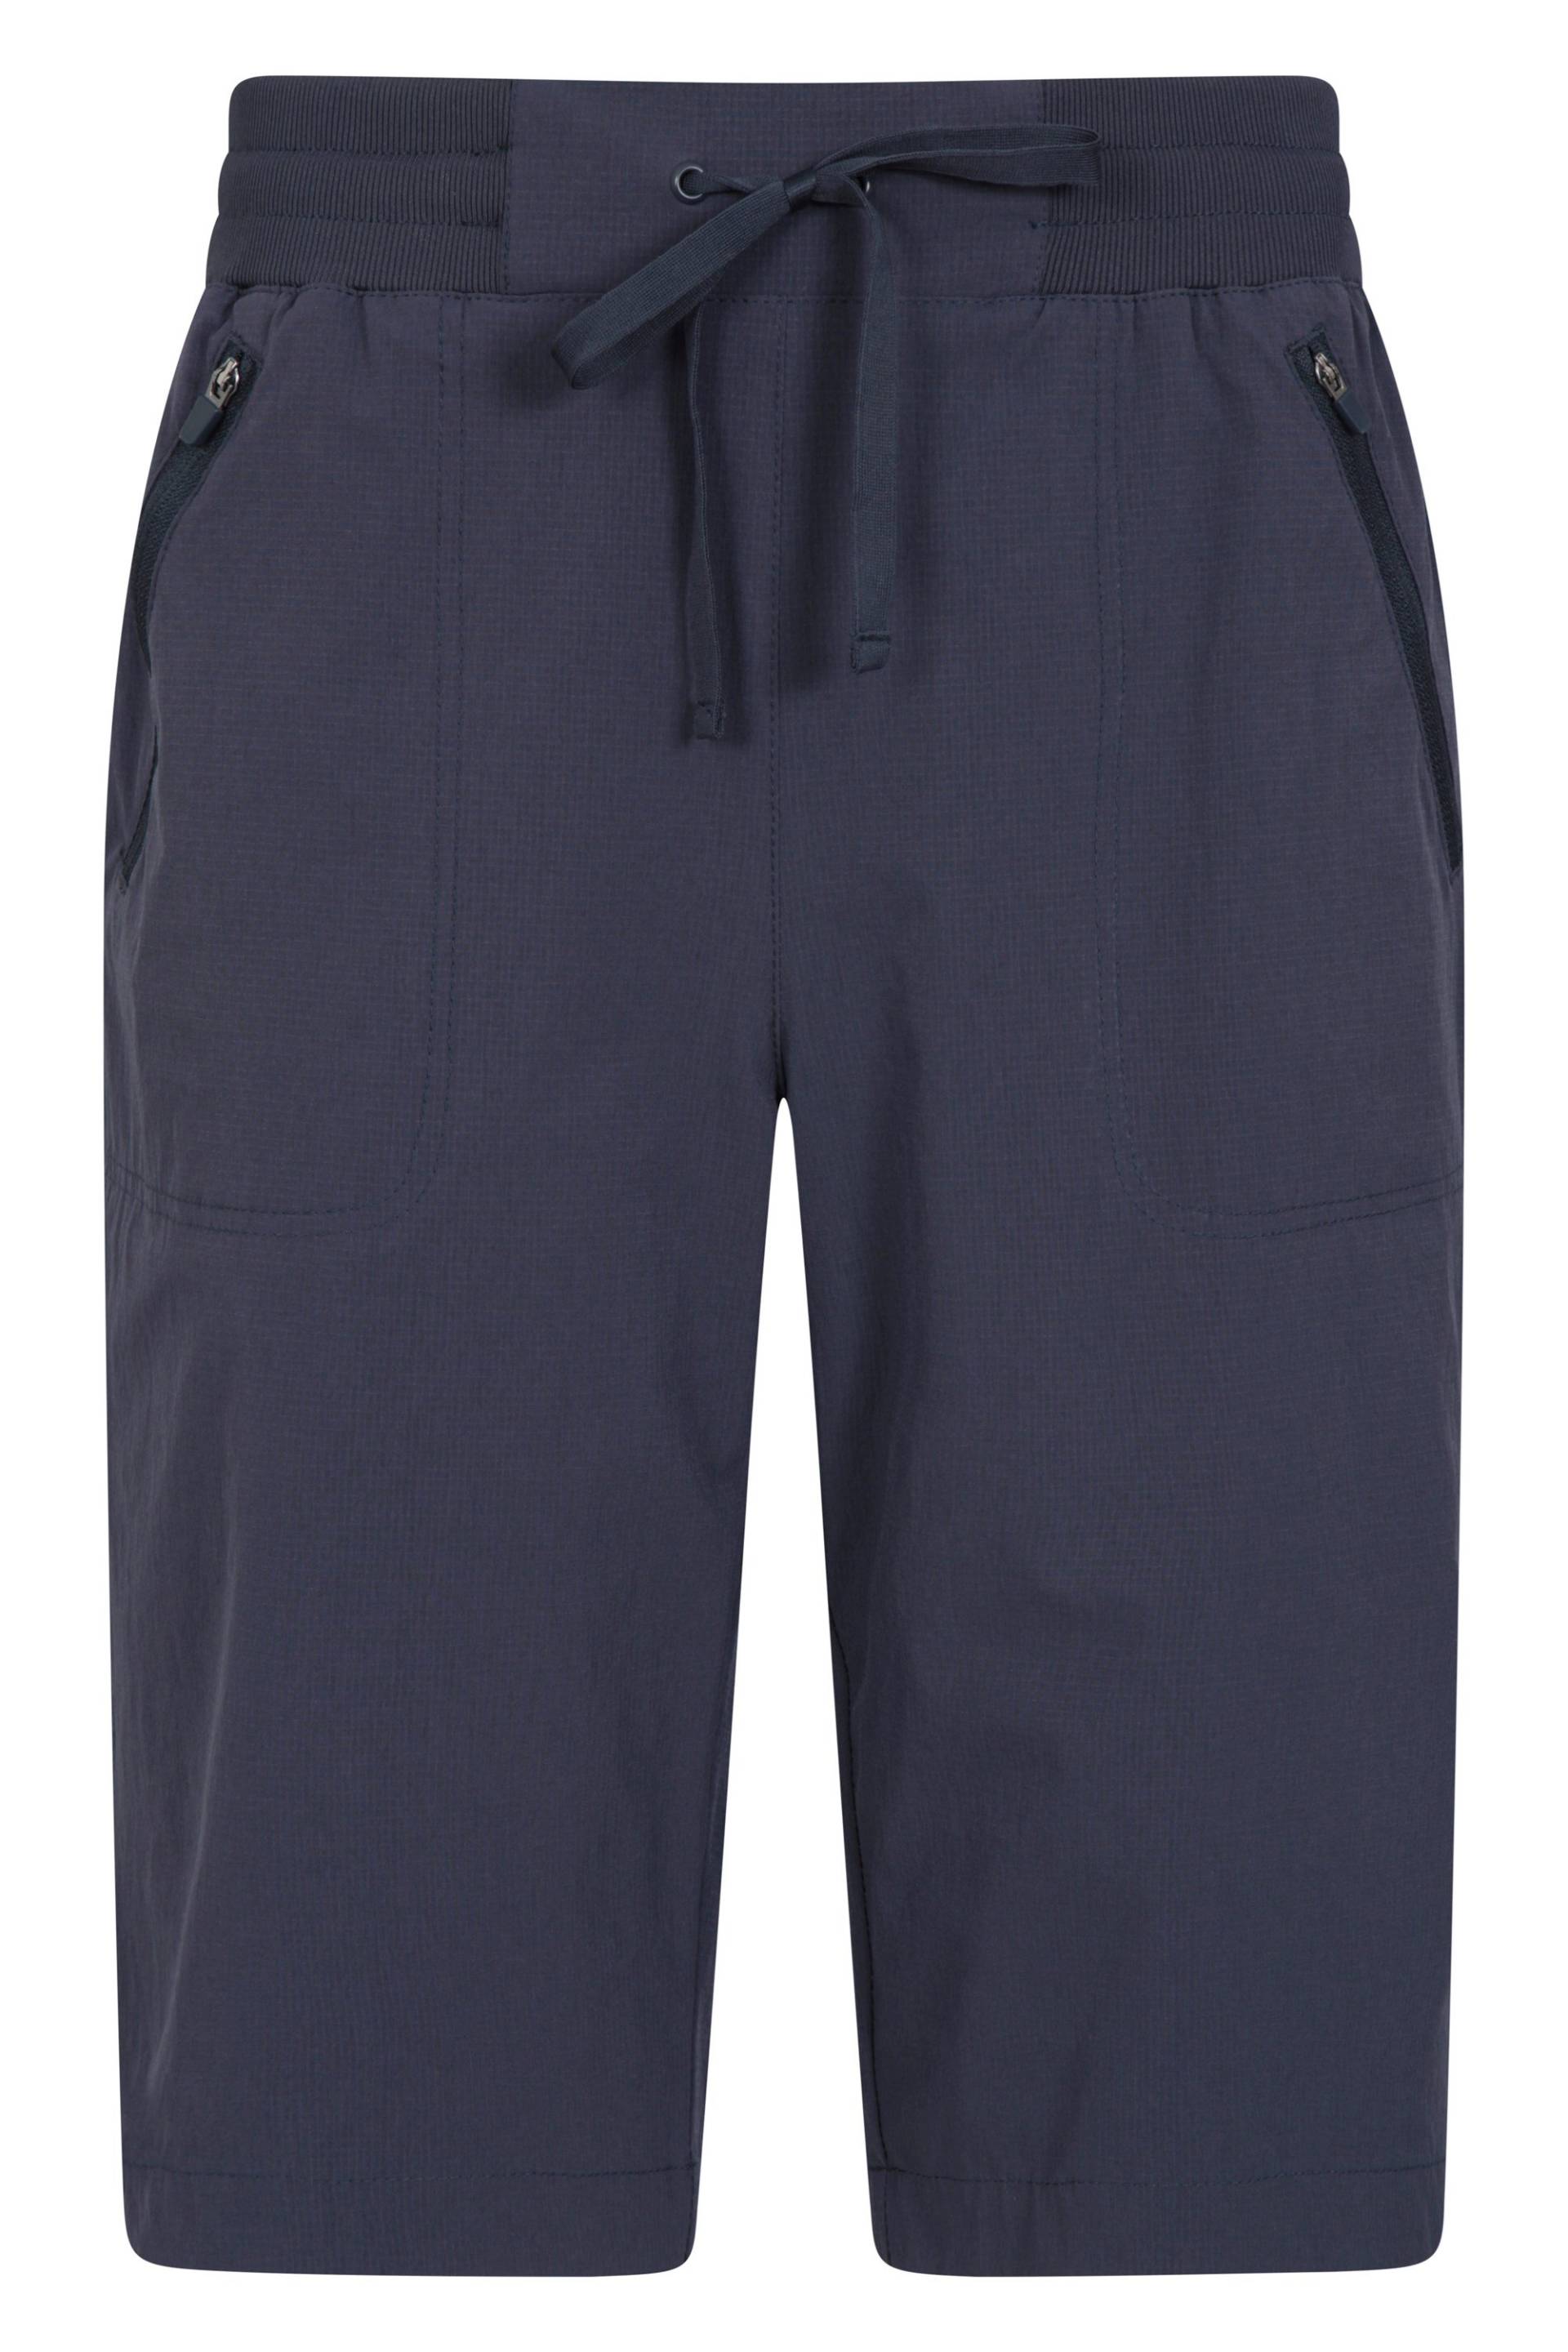 Explorer Lange Damen-Shorts - Dark Blau von Mountain Warehouse